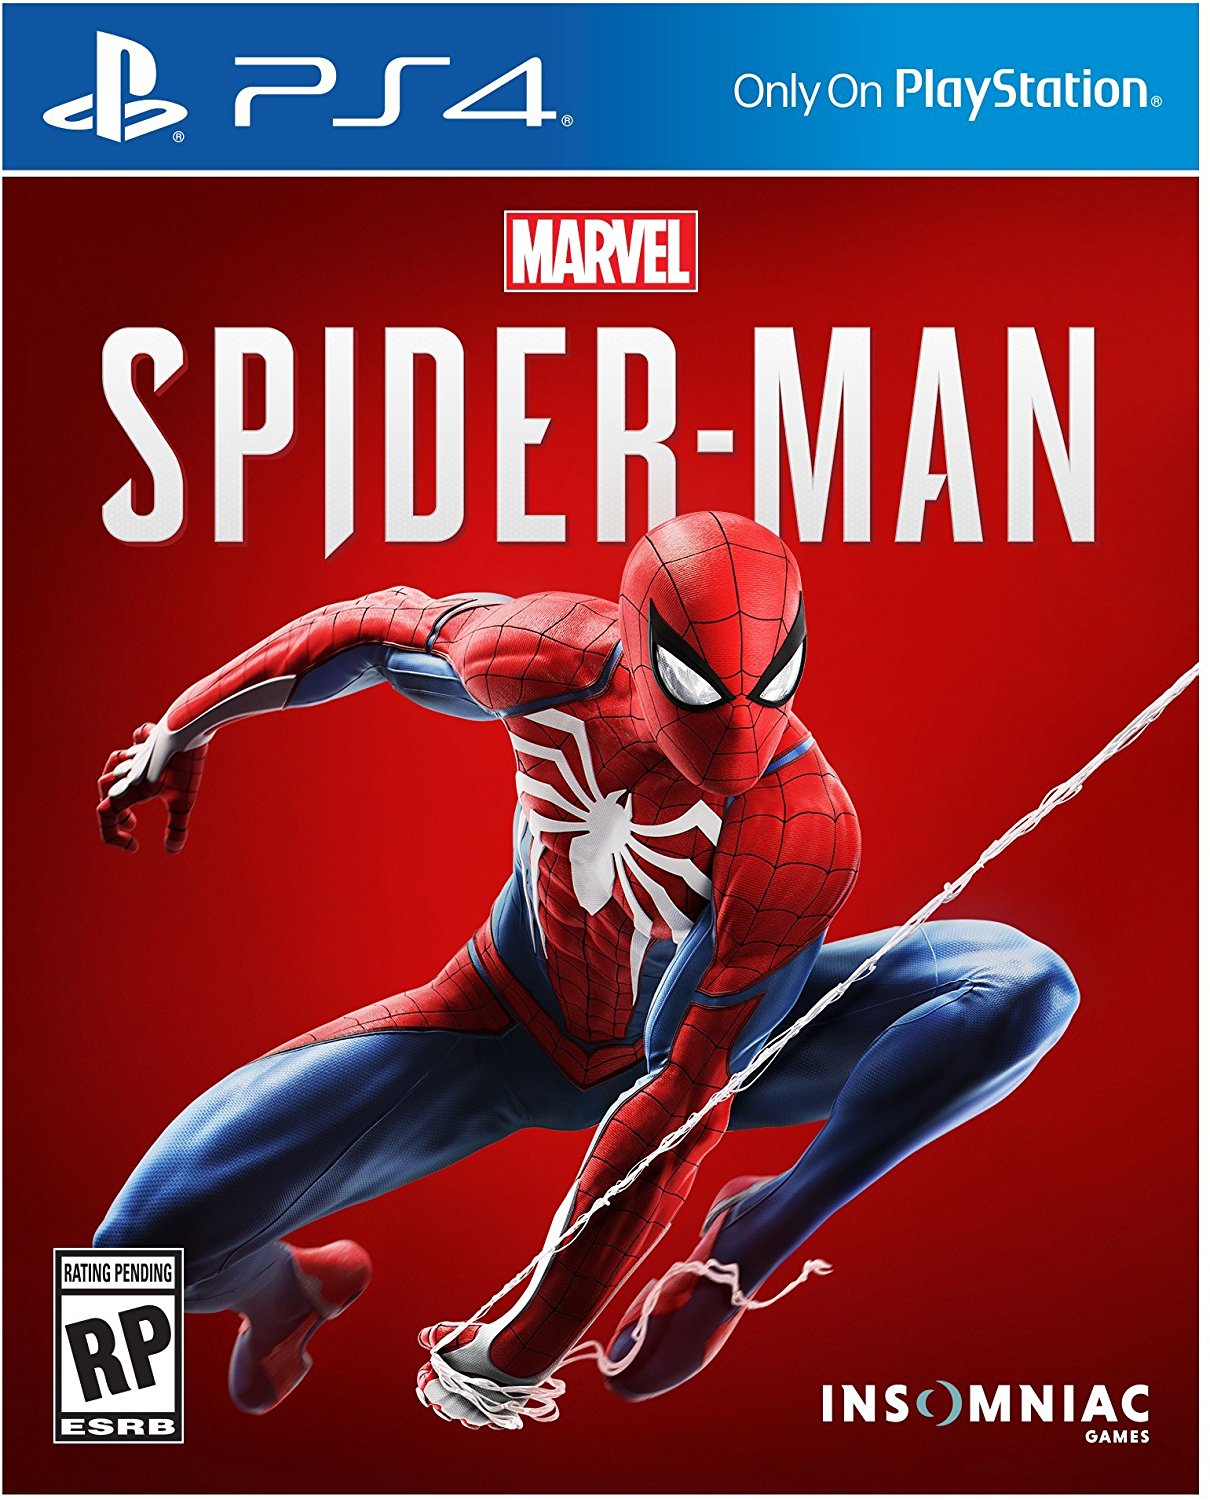 El videojuego de Spider-Man fue considerado uno de los mejores del año en el Game Awards 2018. (Foto: Insomnia)